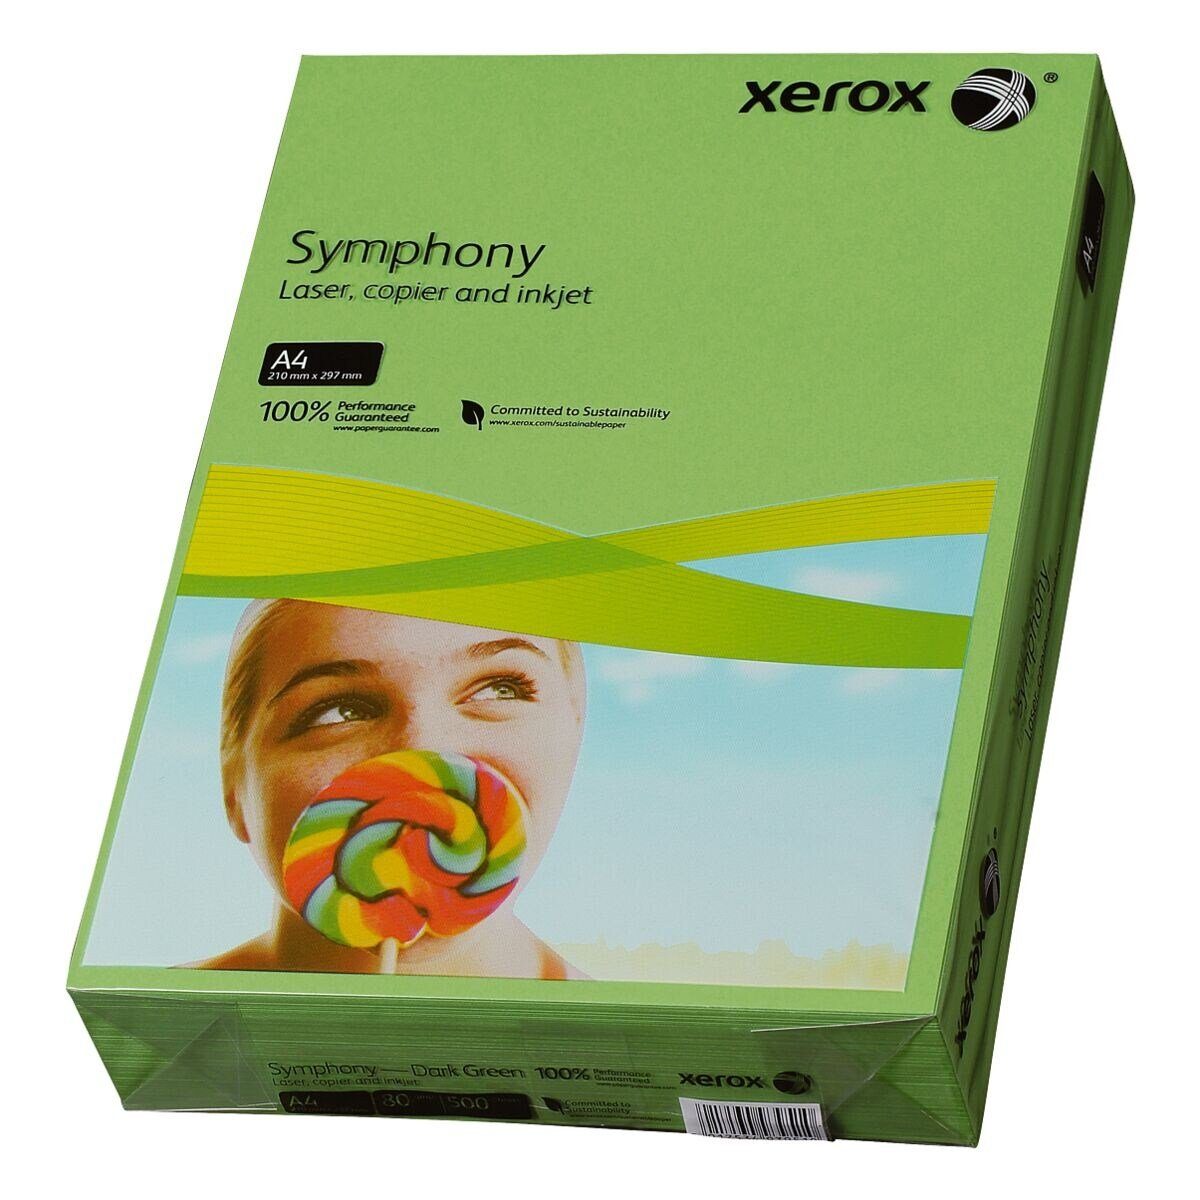 Xerox Drucker- und Kopierpapier Symphony, Intensivfarben, Format DIN A4, 80 g/m², 500 Blatt dunkelgrün